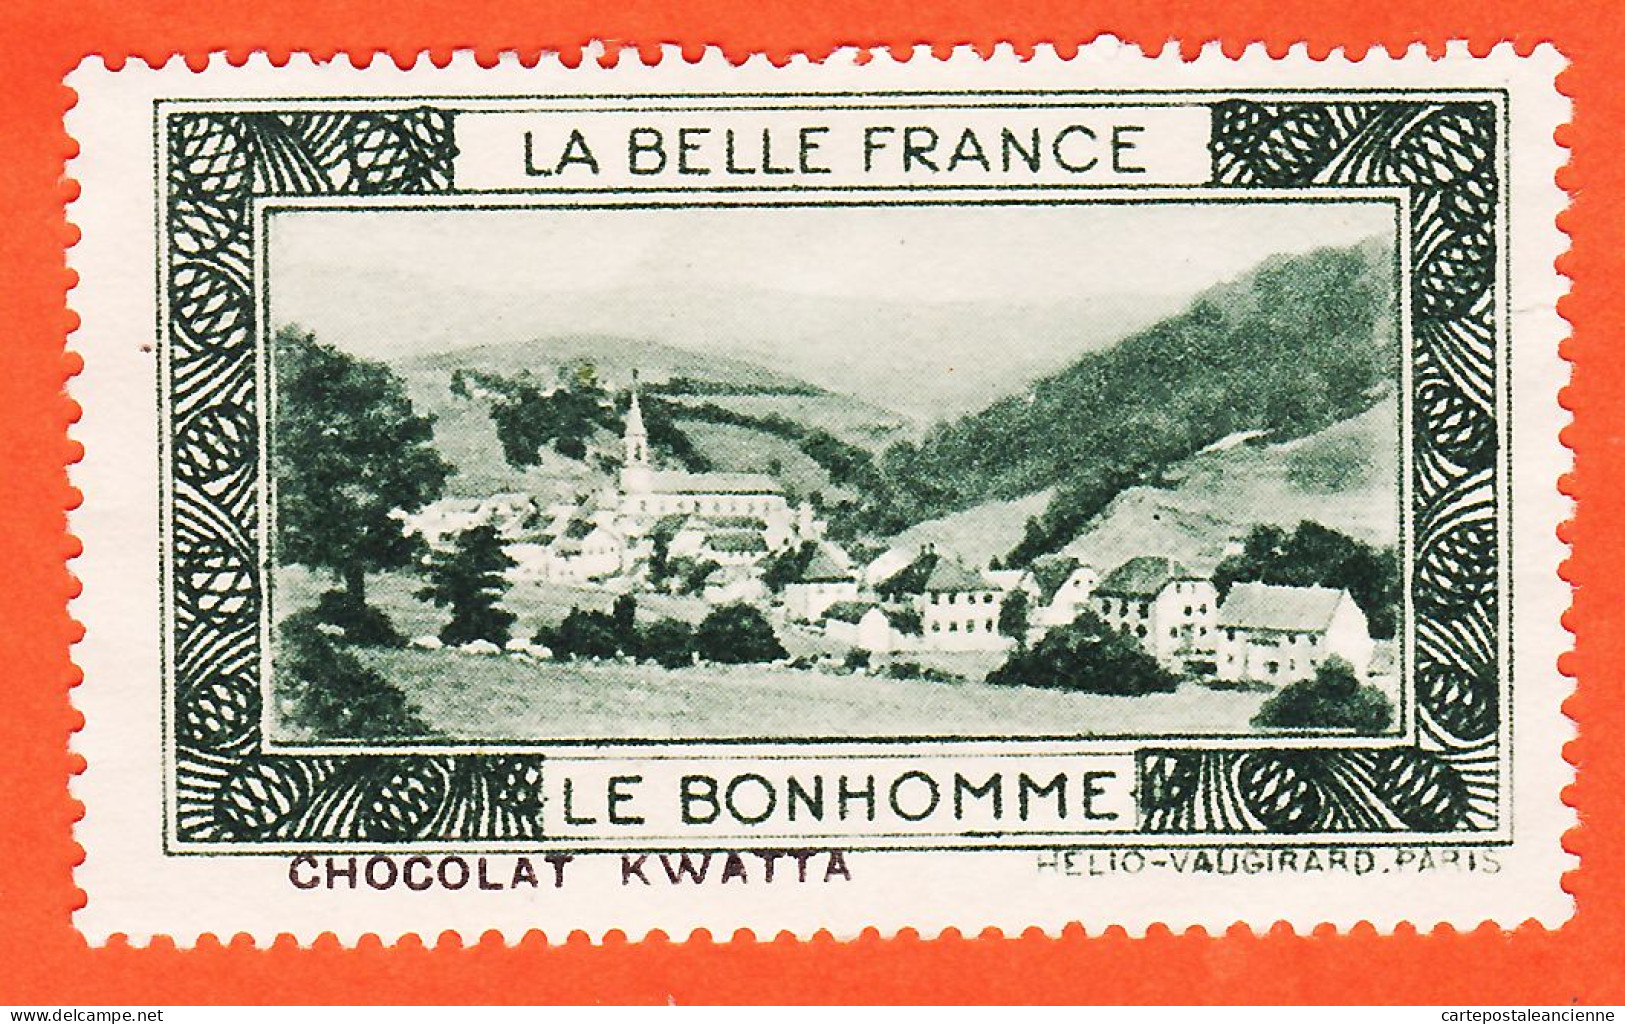 00162 ● (2) LE BONHOMME 68-Haut Rhin Pub Chocolat KWATTA Vignette Collection BELLE FRANCE HELIO-VAUGIRARD Erinnophilie - Turismo (Vignette)